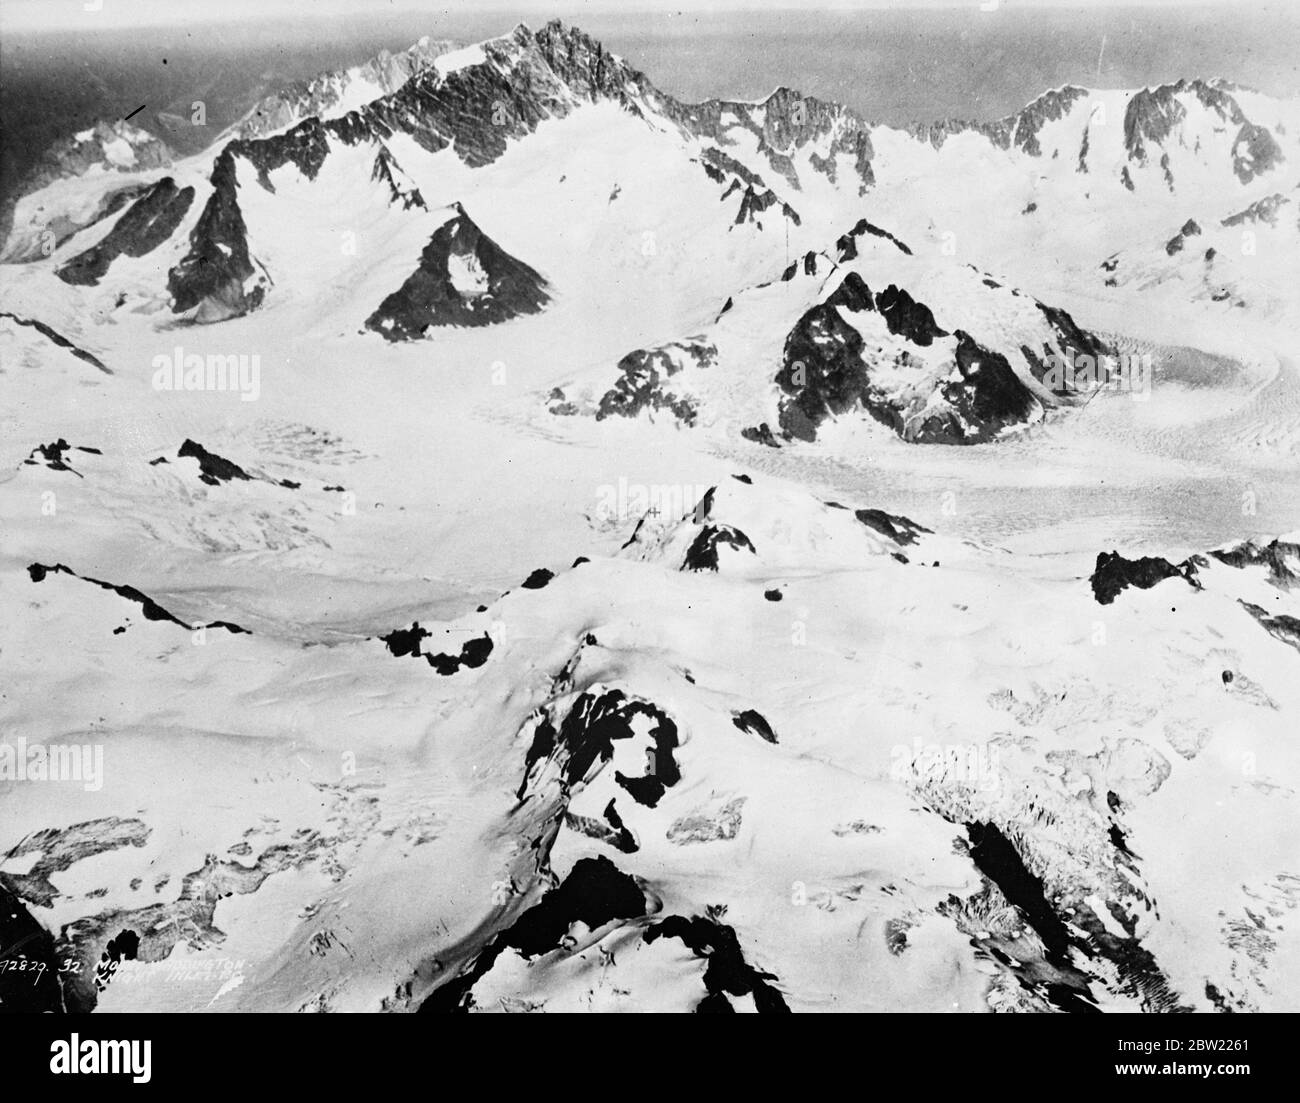 Ein Foto der kanadischen Luftwaffe von den Wild Coast Range Mountains über 13,000 Fuß hoch nördlich von Vancouver, Knight Inlet im Nordwesten Kanadas. Rechts in der Mitte, Mount Waddington. 21. September 1937 [?] Stockfoto